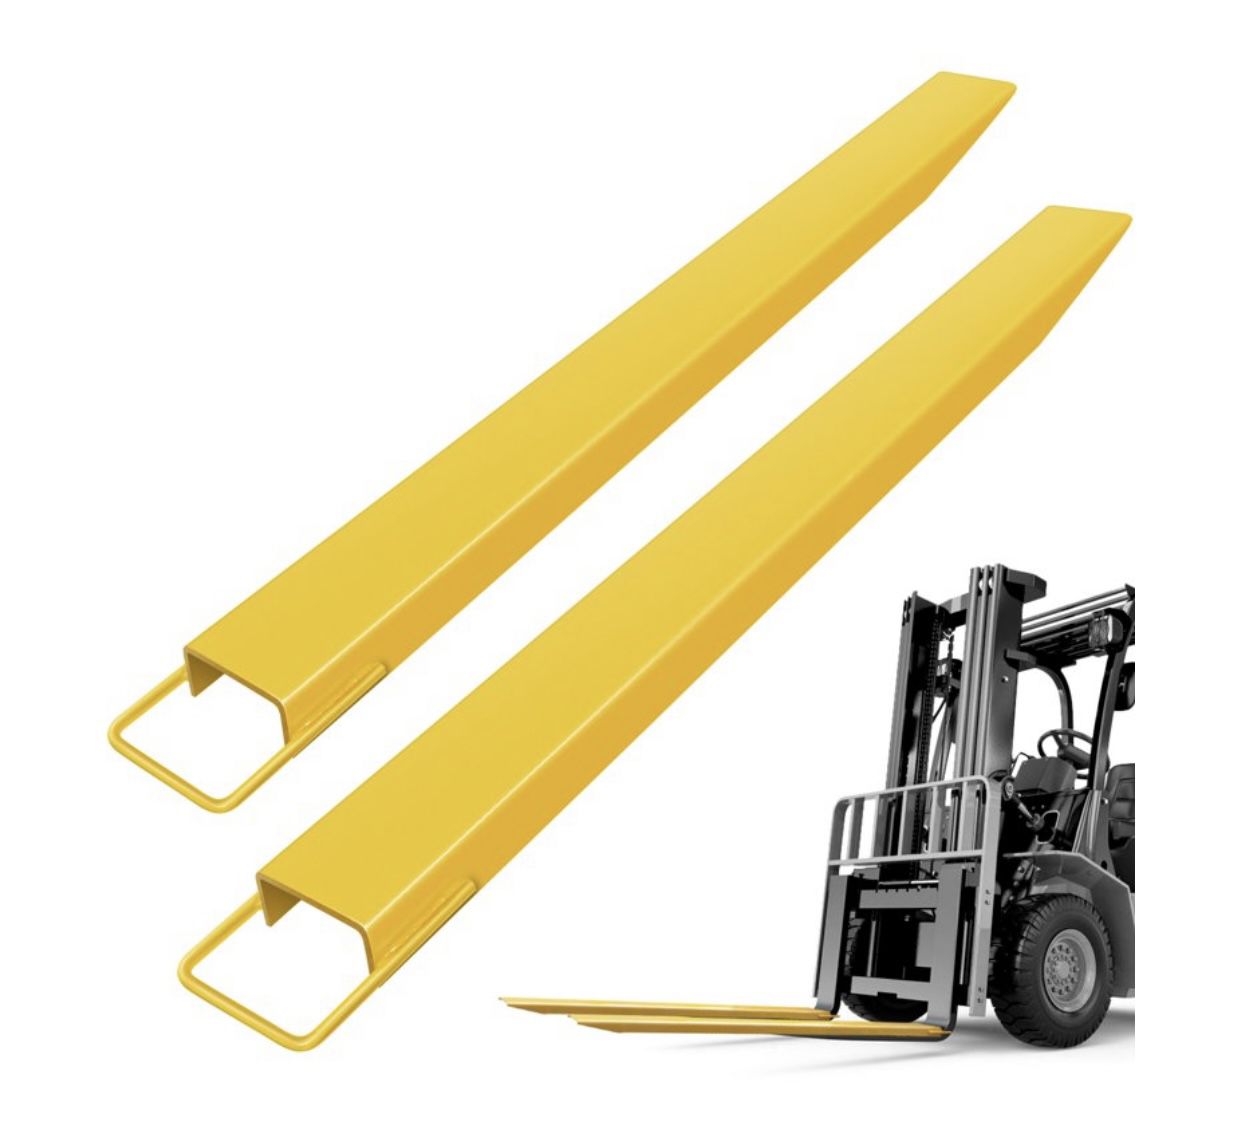 Forklift Extensions, Pallet Fork Extensions, 60 ×4.5" Heavy Duty Steel Pallet Forklift Extensions, 1 Pair for Forklift Lift Truck Forklift Loaders